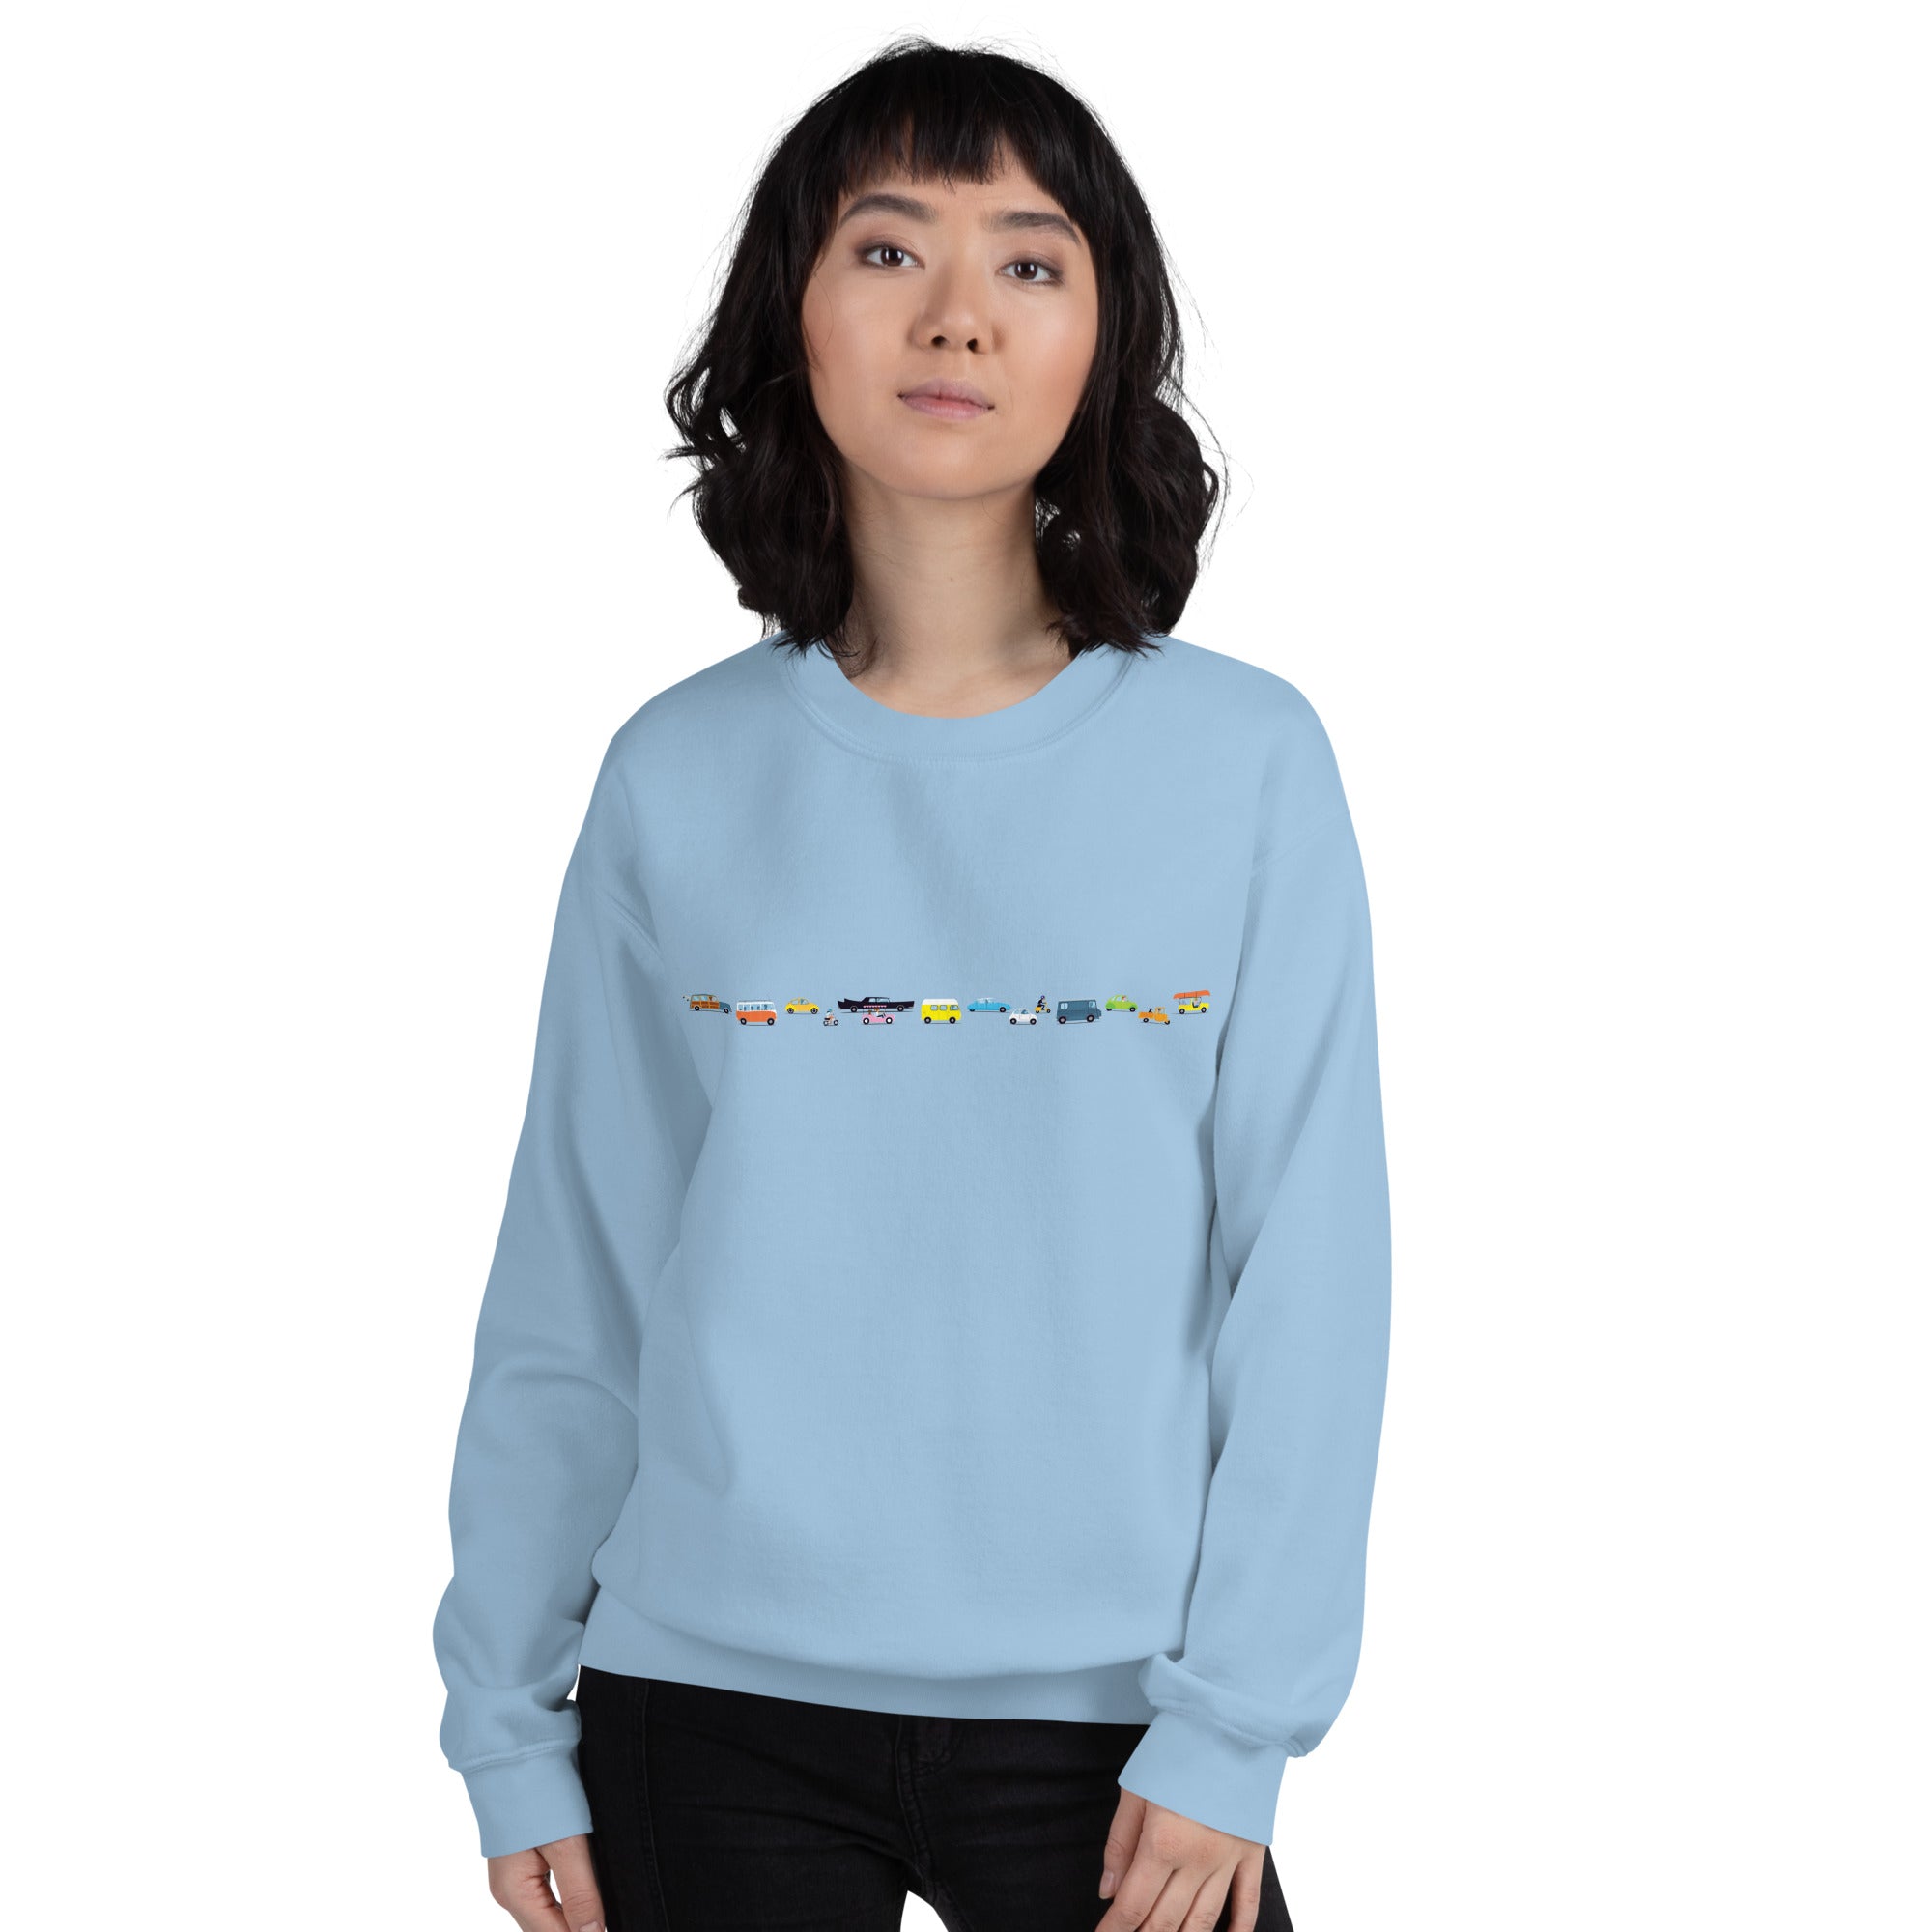 Unisex Sweatshirt Vintage Cars Traffic Jam on light colors